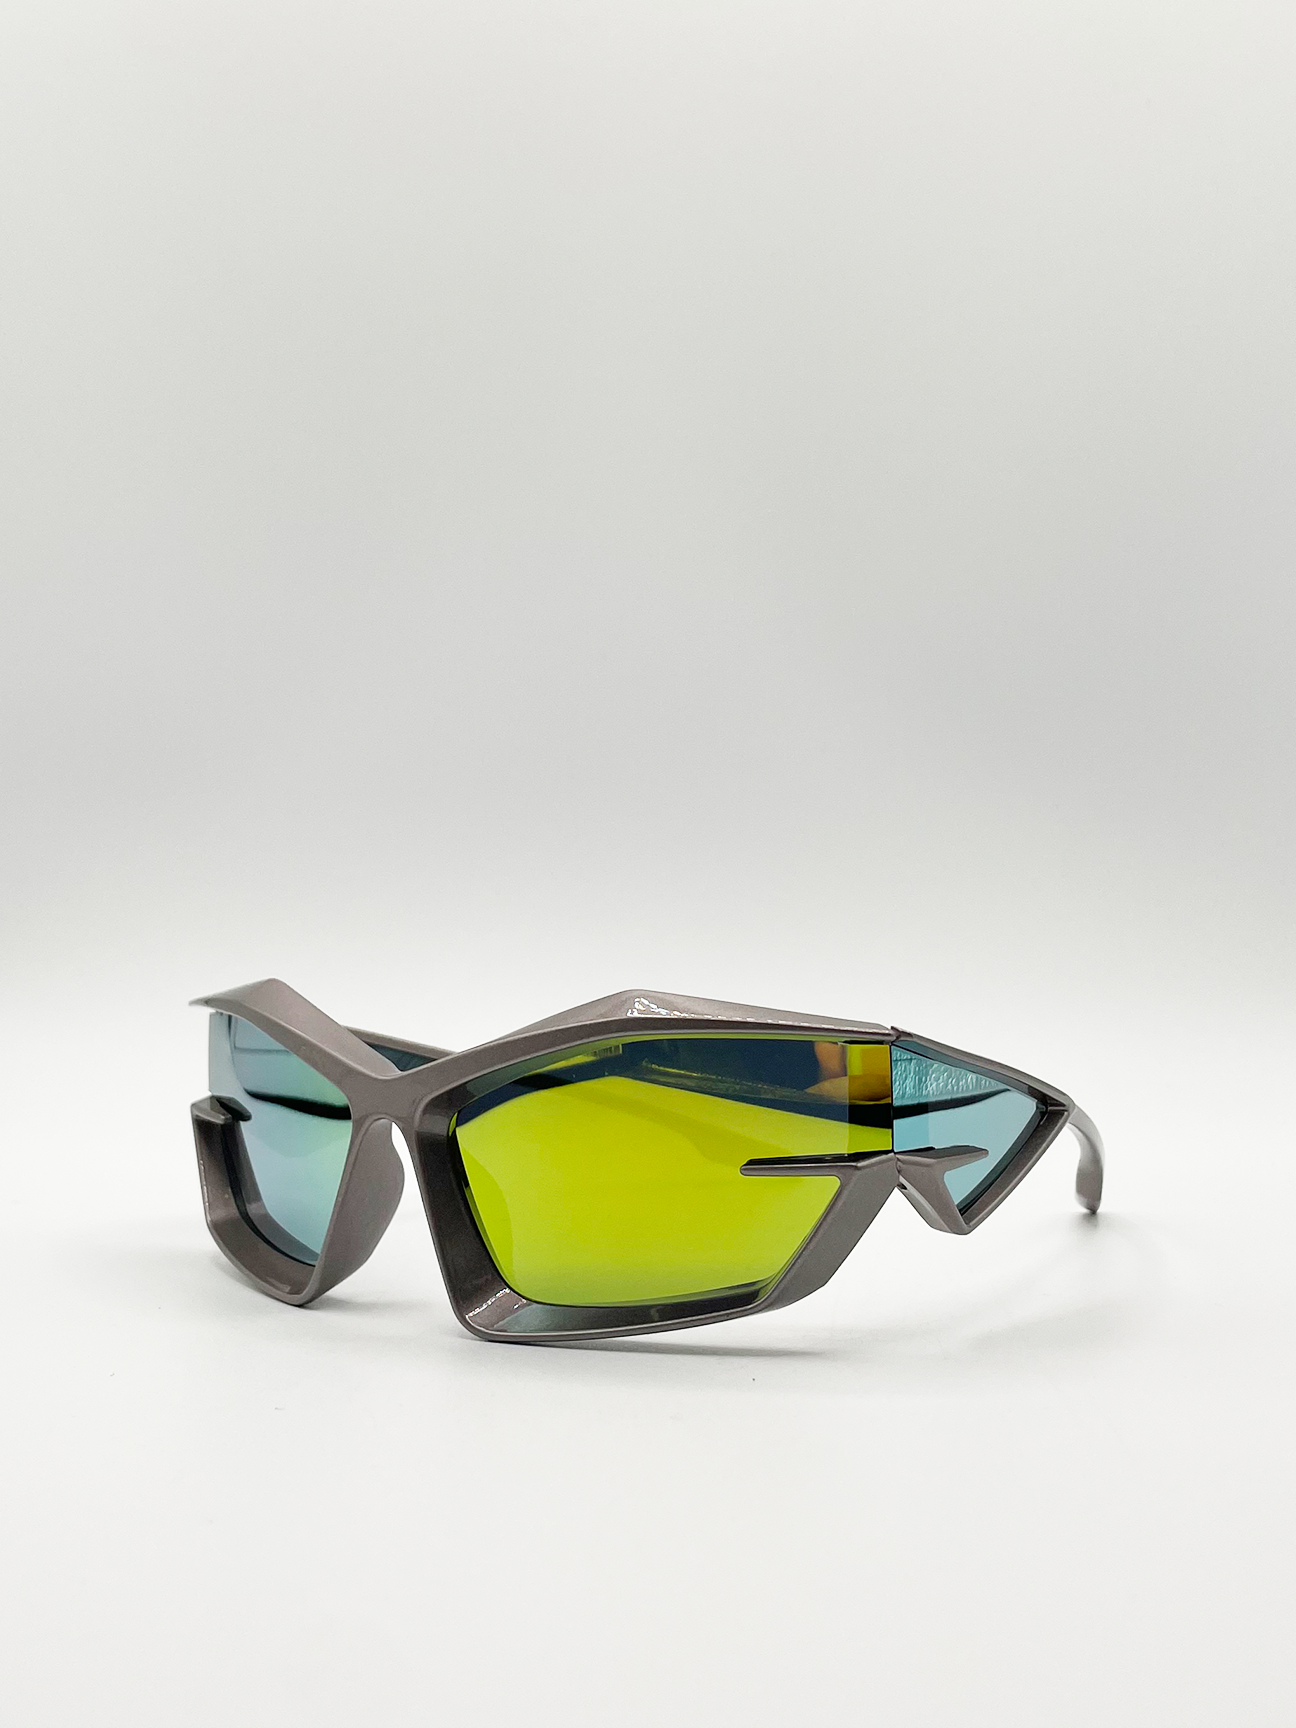 Racer style plastic frame sunglasses in multi